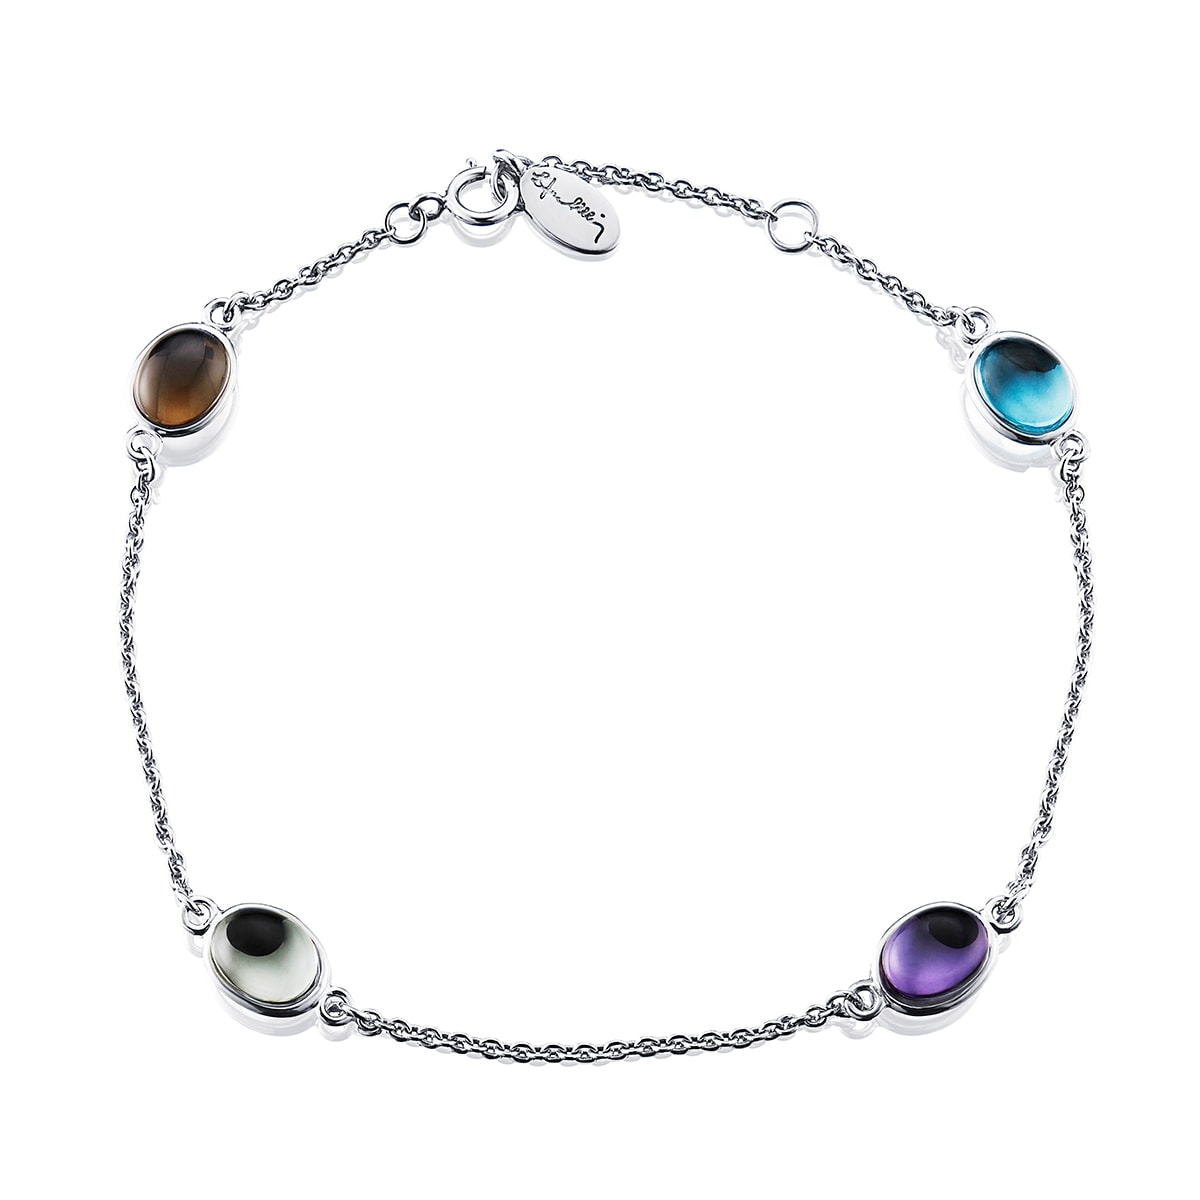 Efva_Attling_smycken_Love Beads Flow Bracelet 14-102-00462(2)_hos_Jarl_Sandin